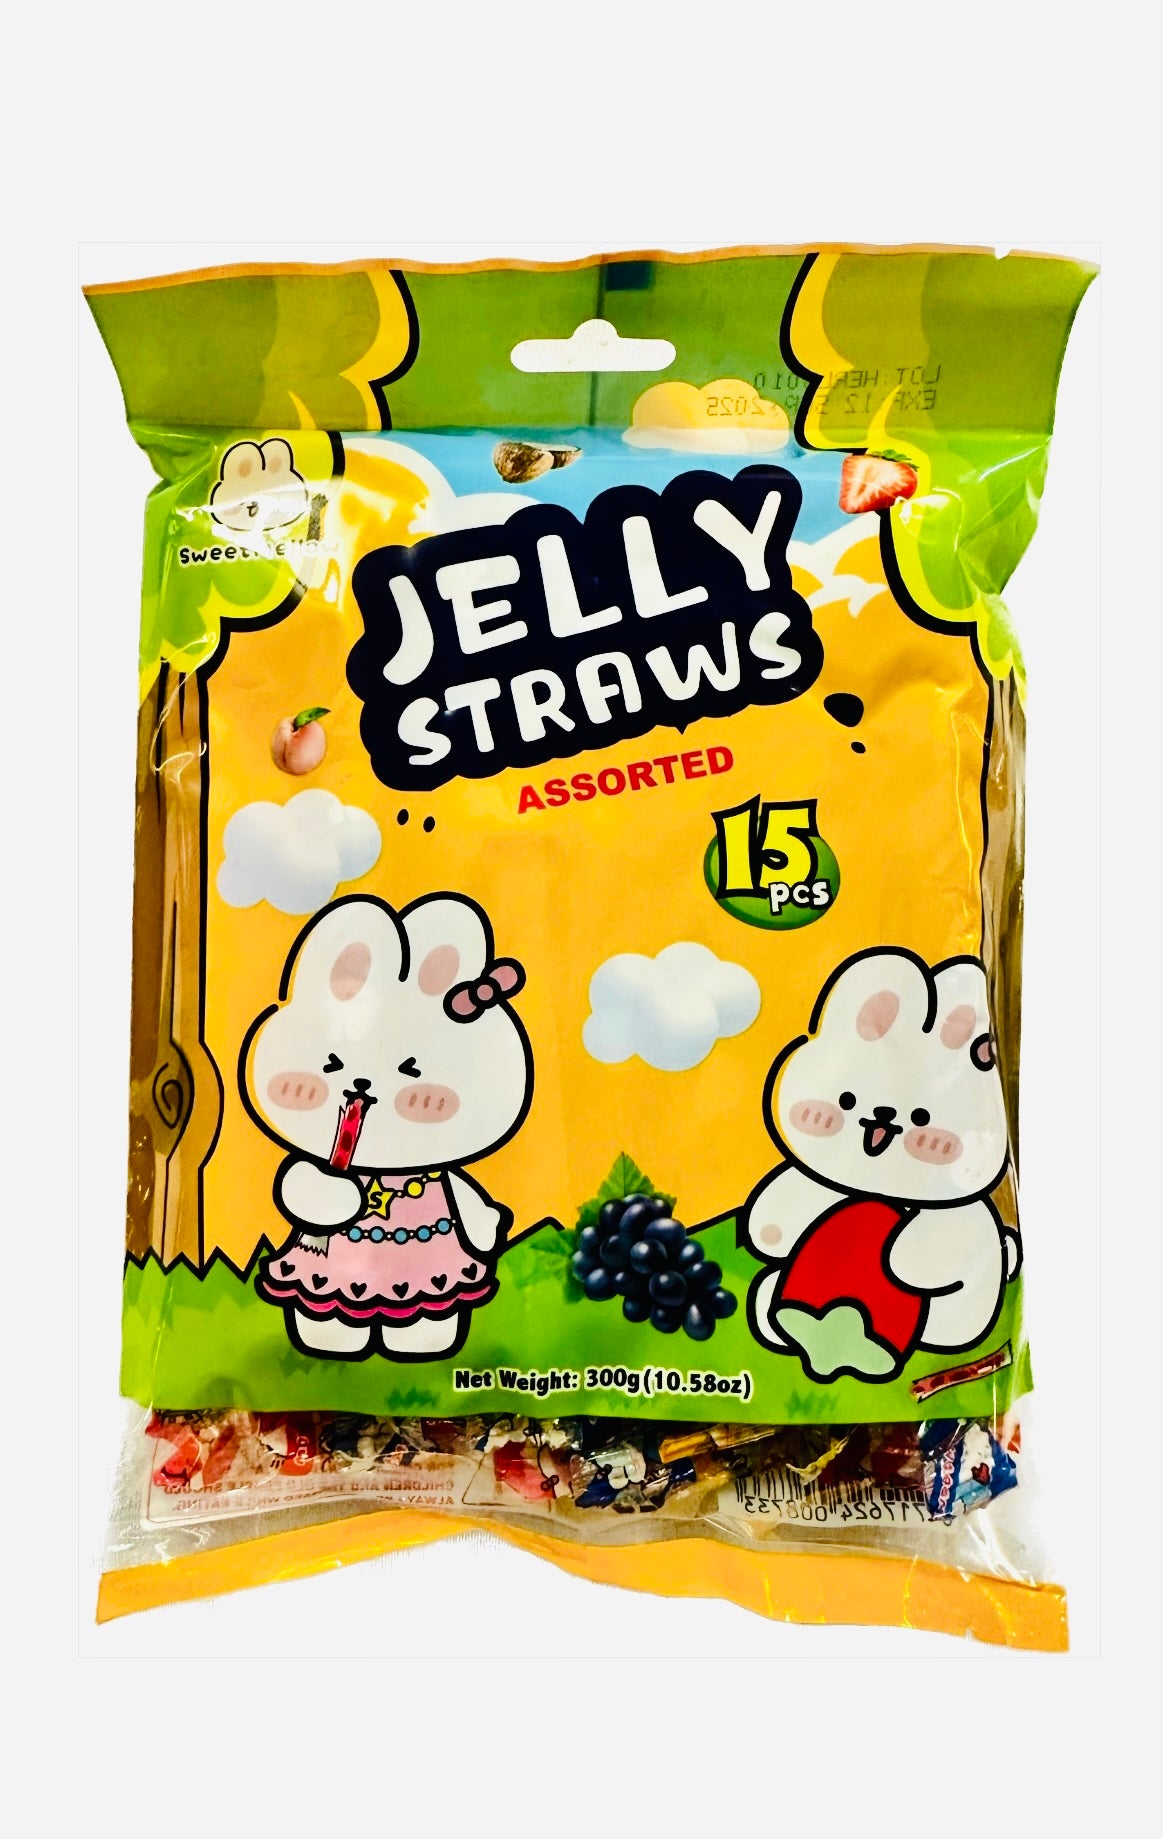 溏心萌萌 果冻条 混合口味 Jelly Sticks Assorted 4 Flavors TXMM 300g